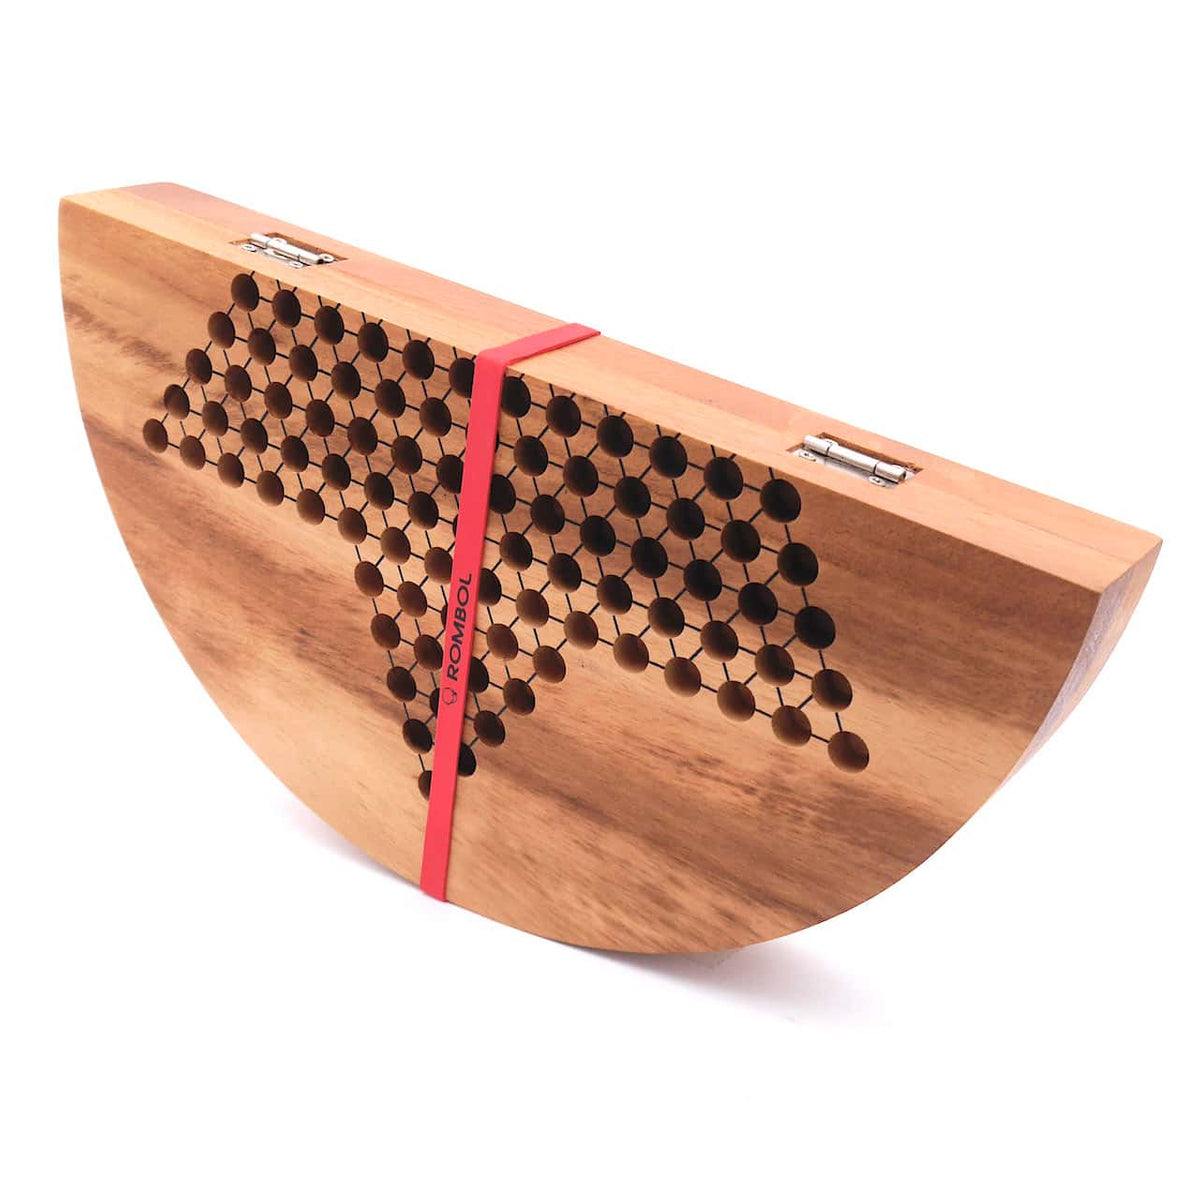 Zugeklapptes Halmaspiel aus Holz gesichert mit einem roten Gummiband